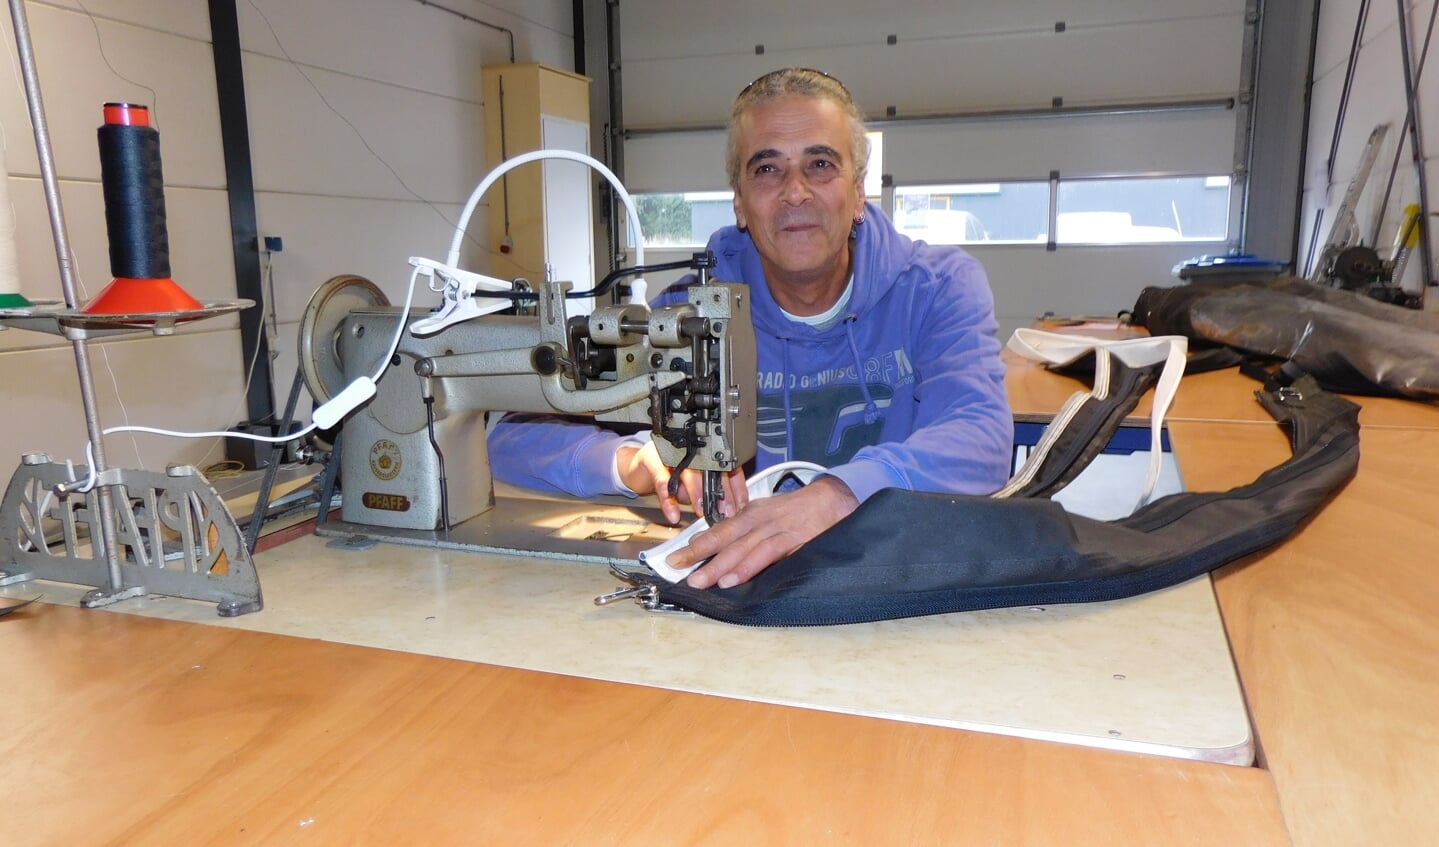 Stav Vardimon achter zijn naaimachine